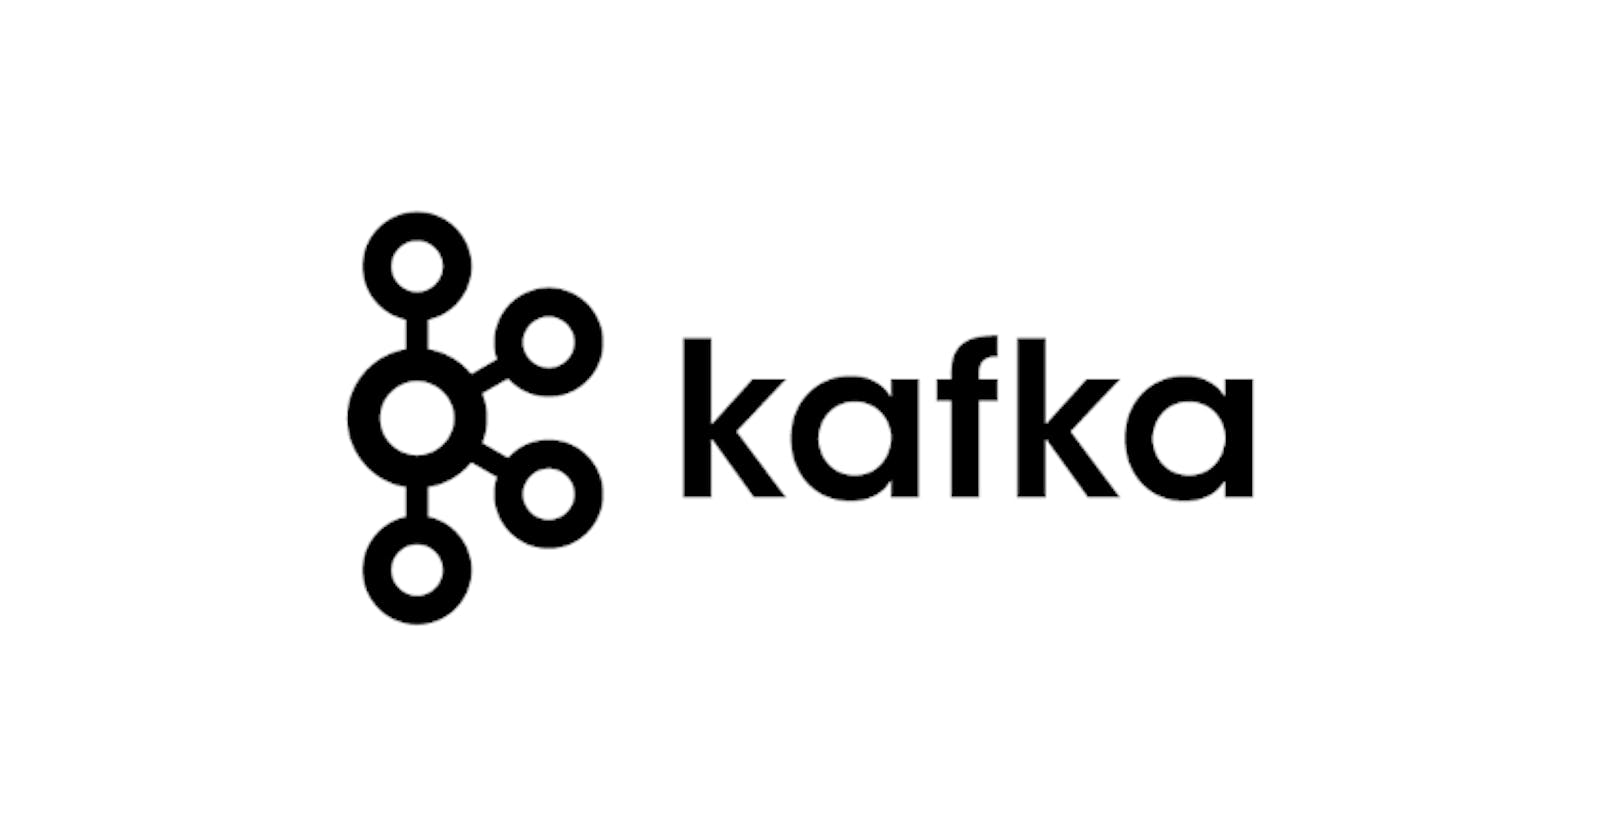 Kafka tools in macOS